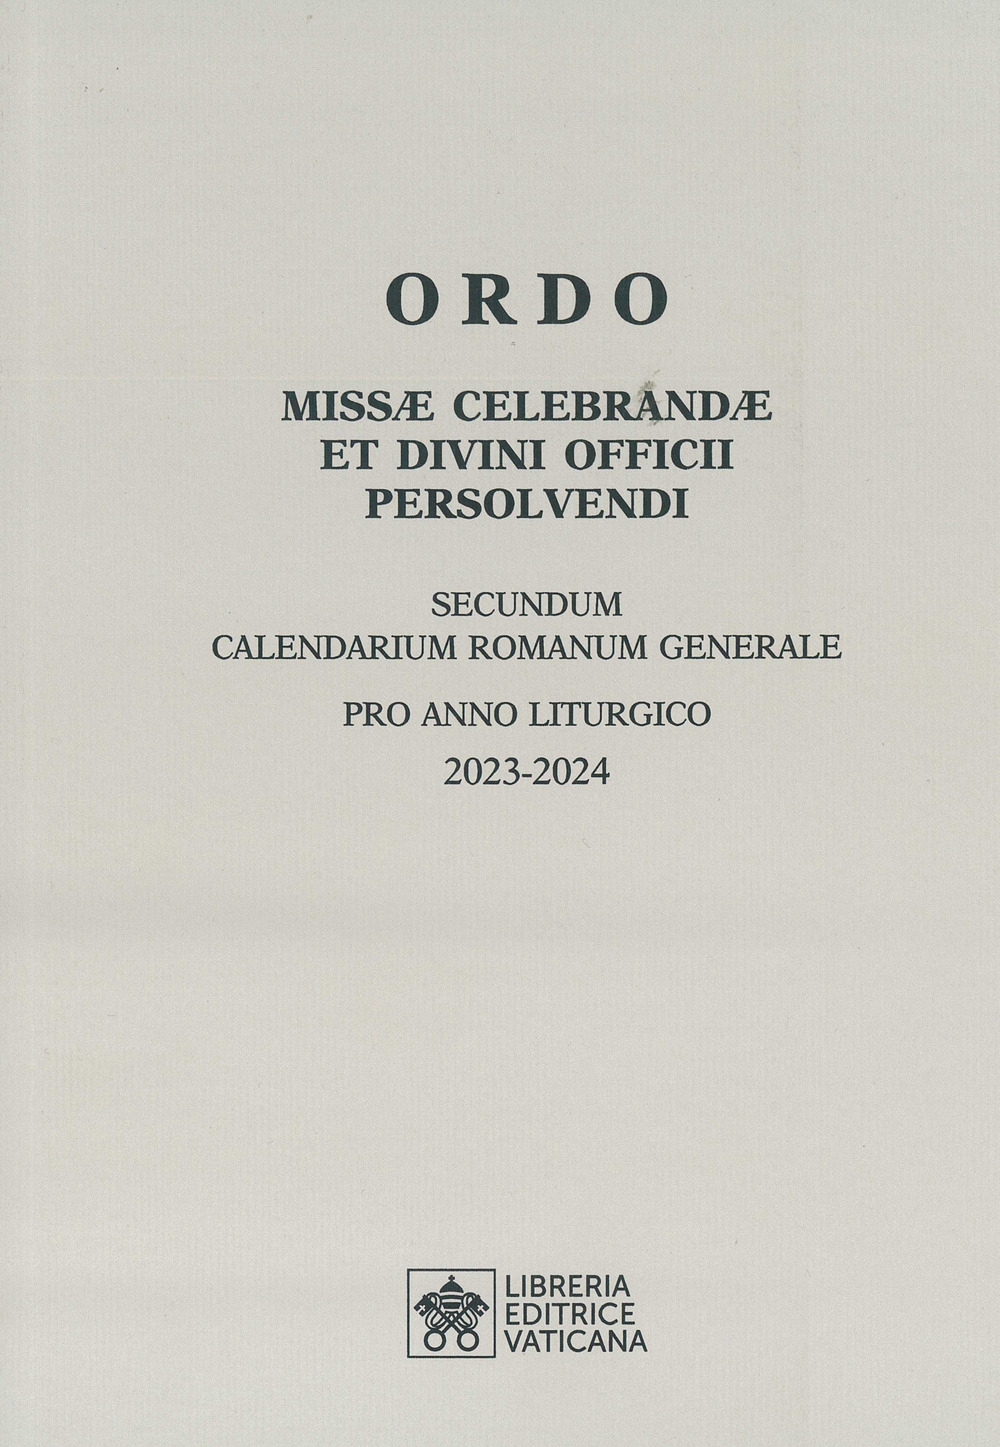 Ordo missae celebrandae et divini officii persolvendi. Secundum calendarium romanum generale pro anno liturgico 2023-2024